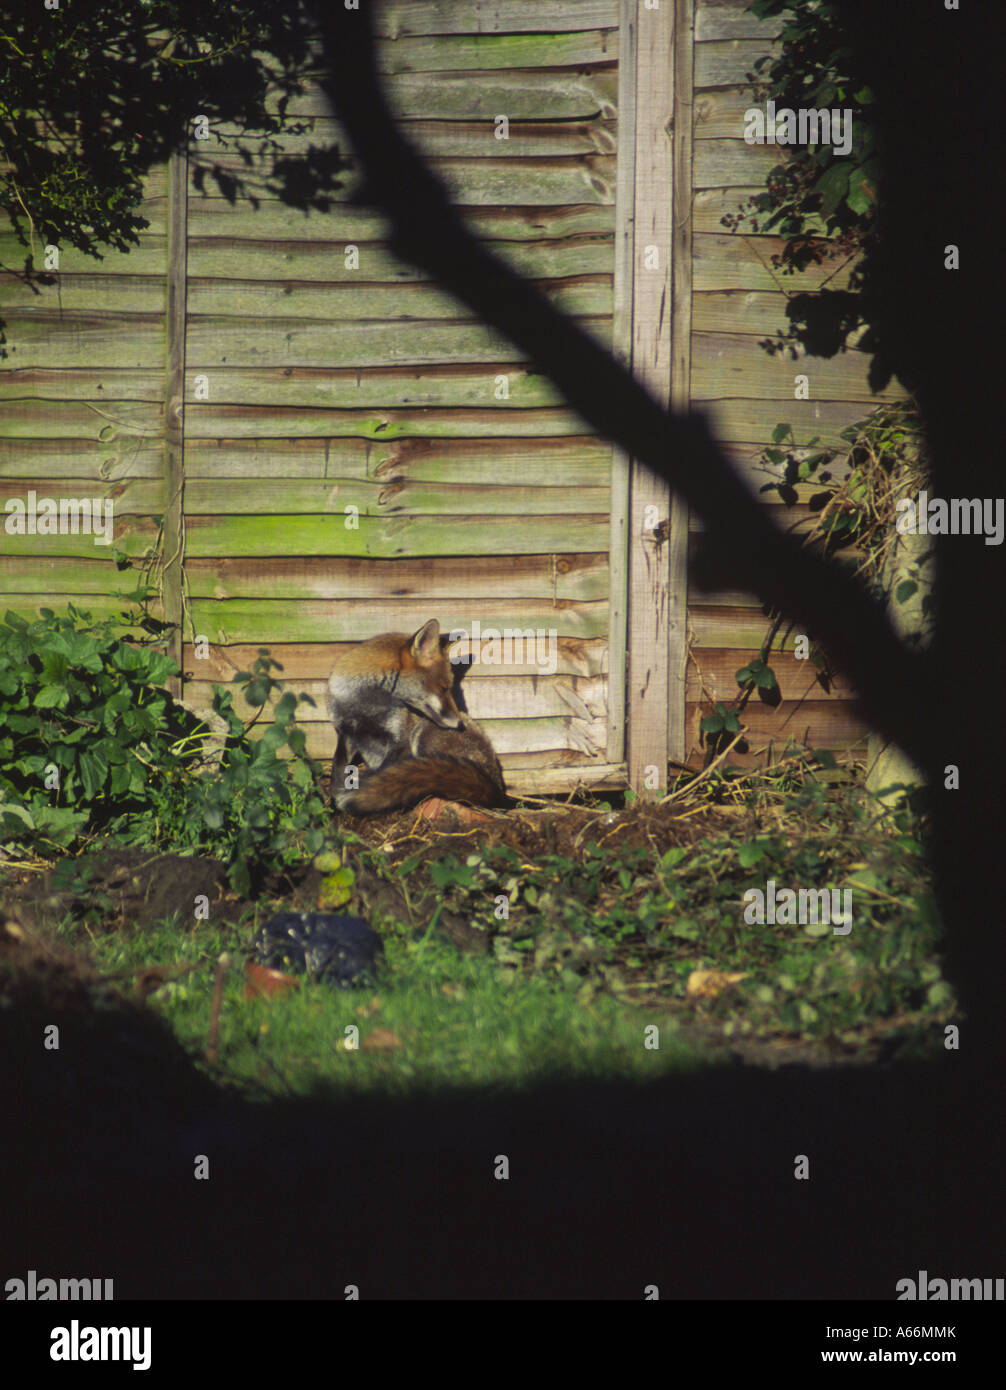 La faune urbaine : un renard roux (Vulpes vulpes) le toilettage au soleil au bout du jardin, 3 avenue Kenilworth, Oxford UK 2004 Banque D'Images